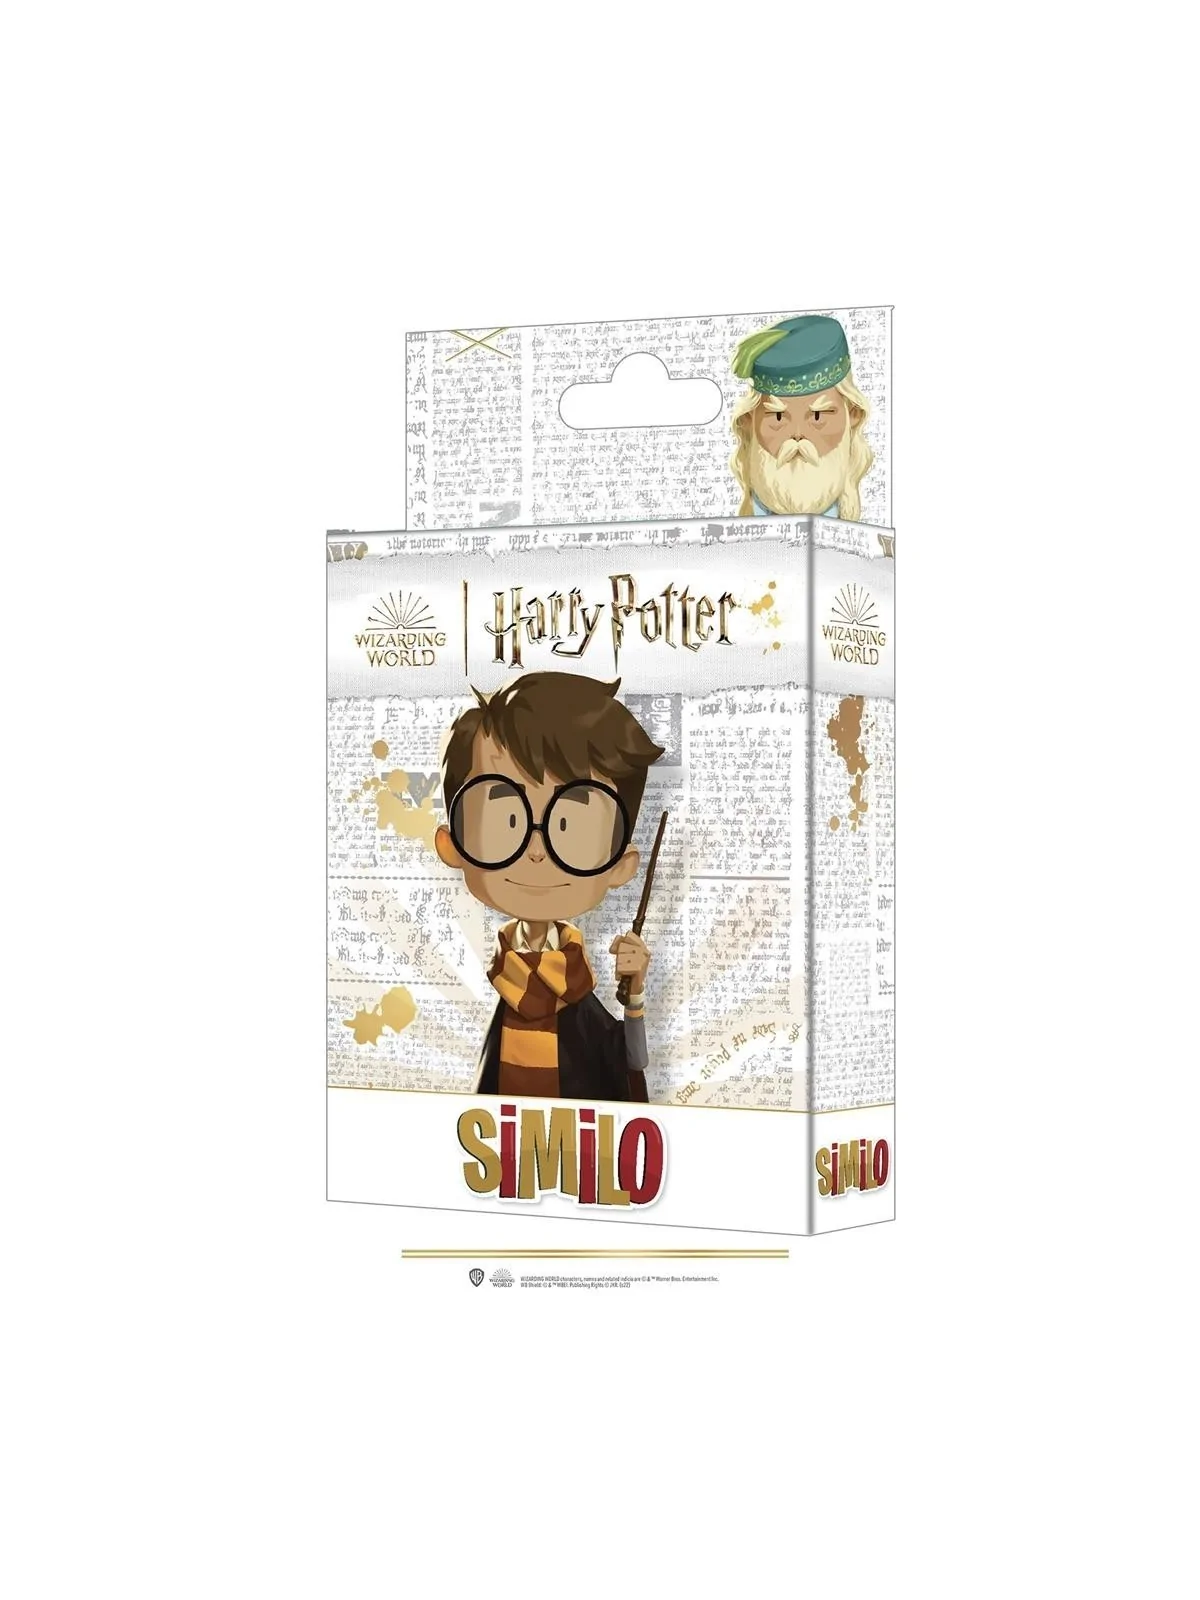 Comprar Similo Harry Potter barato al mejor precio 8,99 € de Horrible 